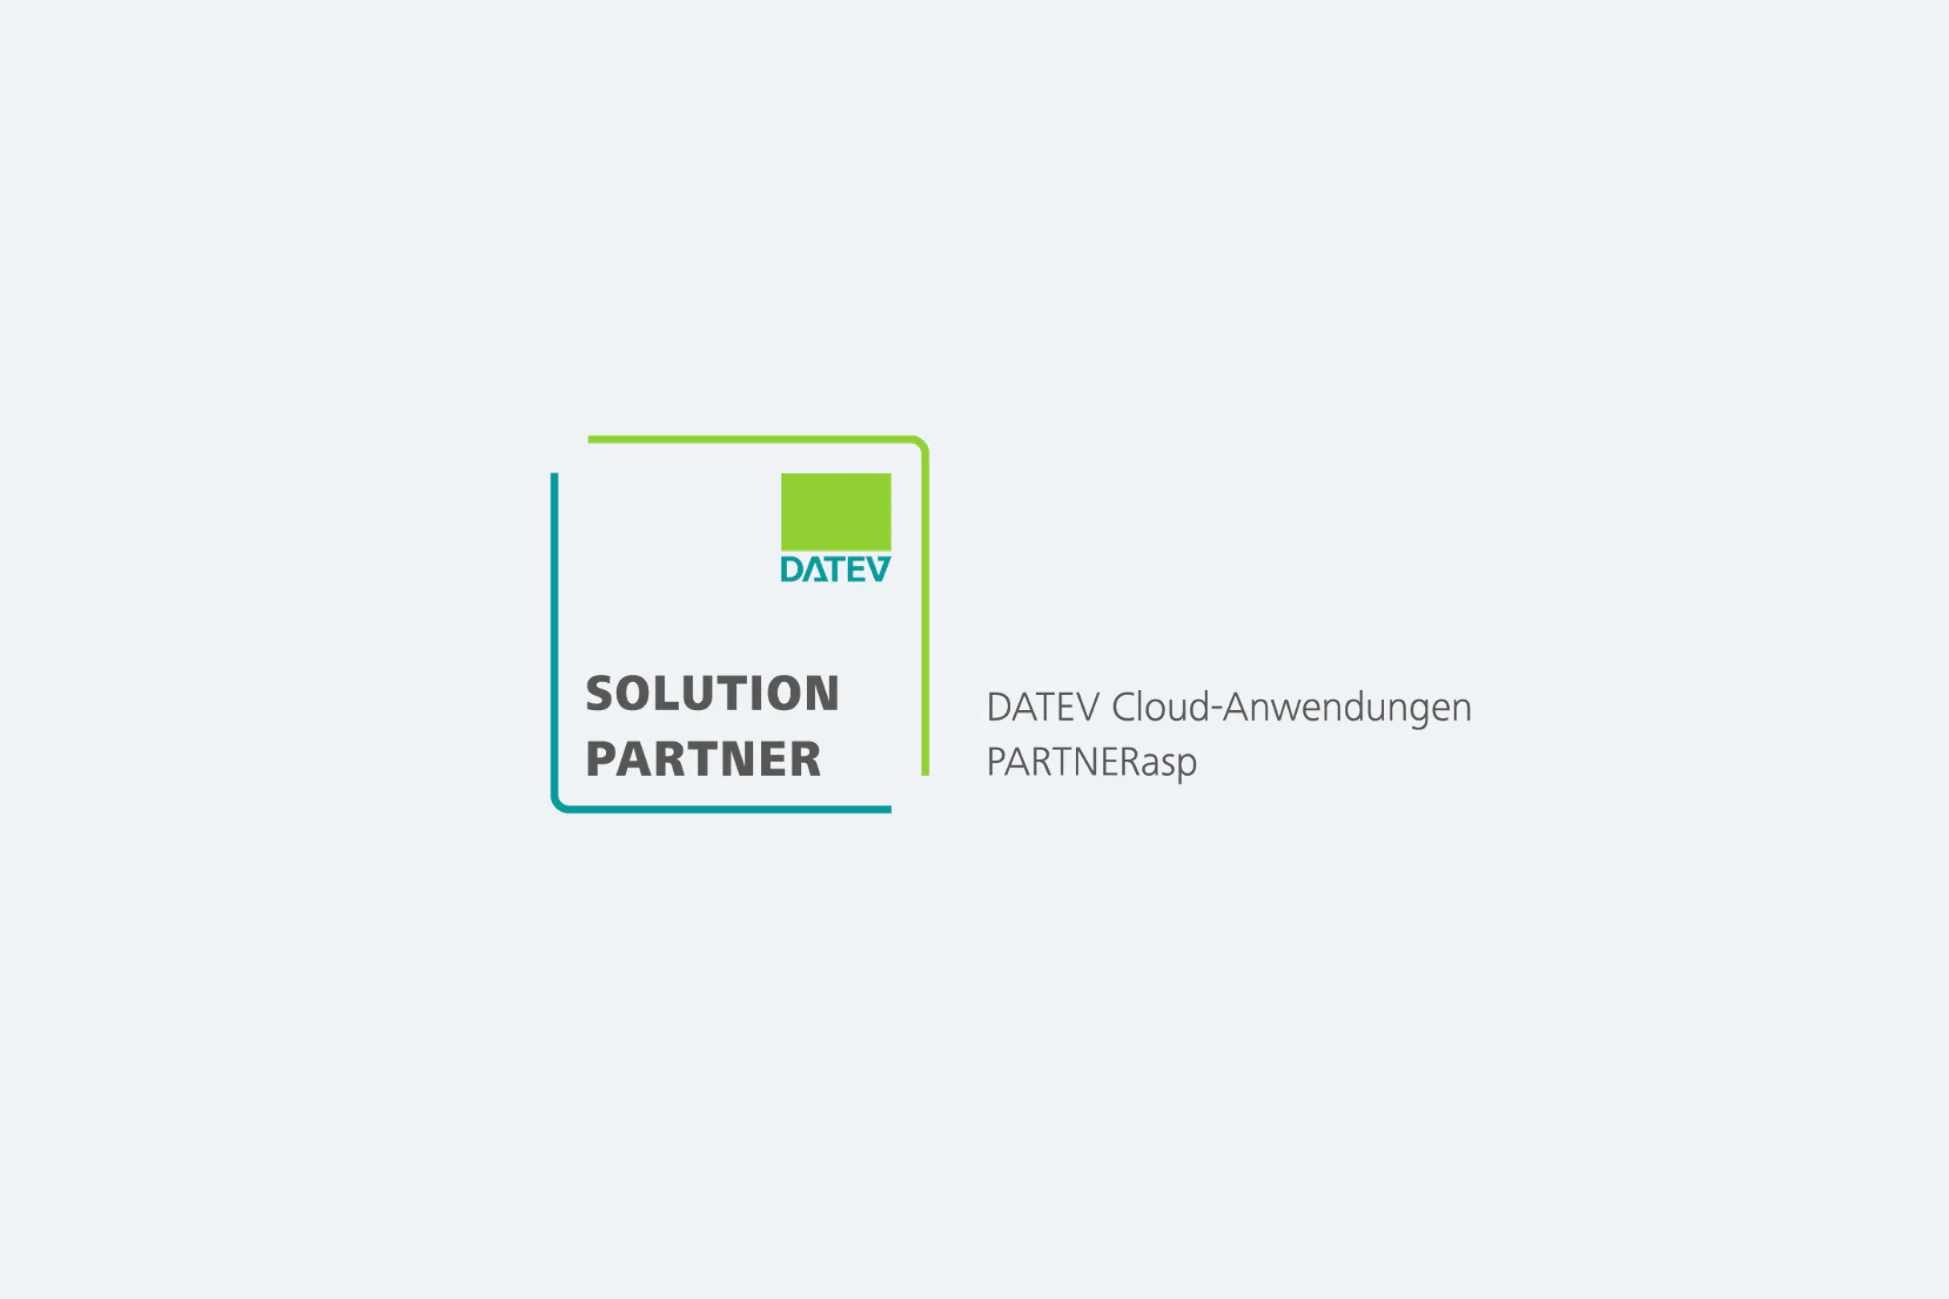 Solution Partner DATEV Cloud Anwendungen